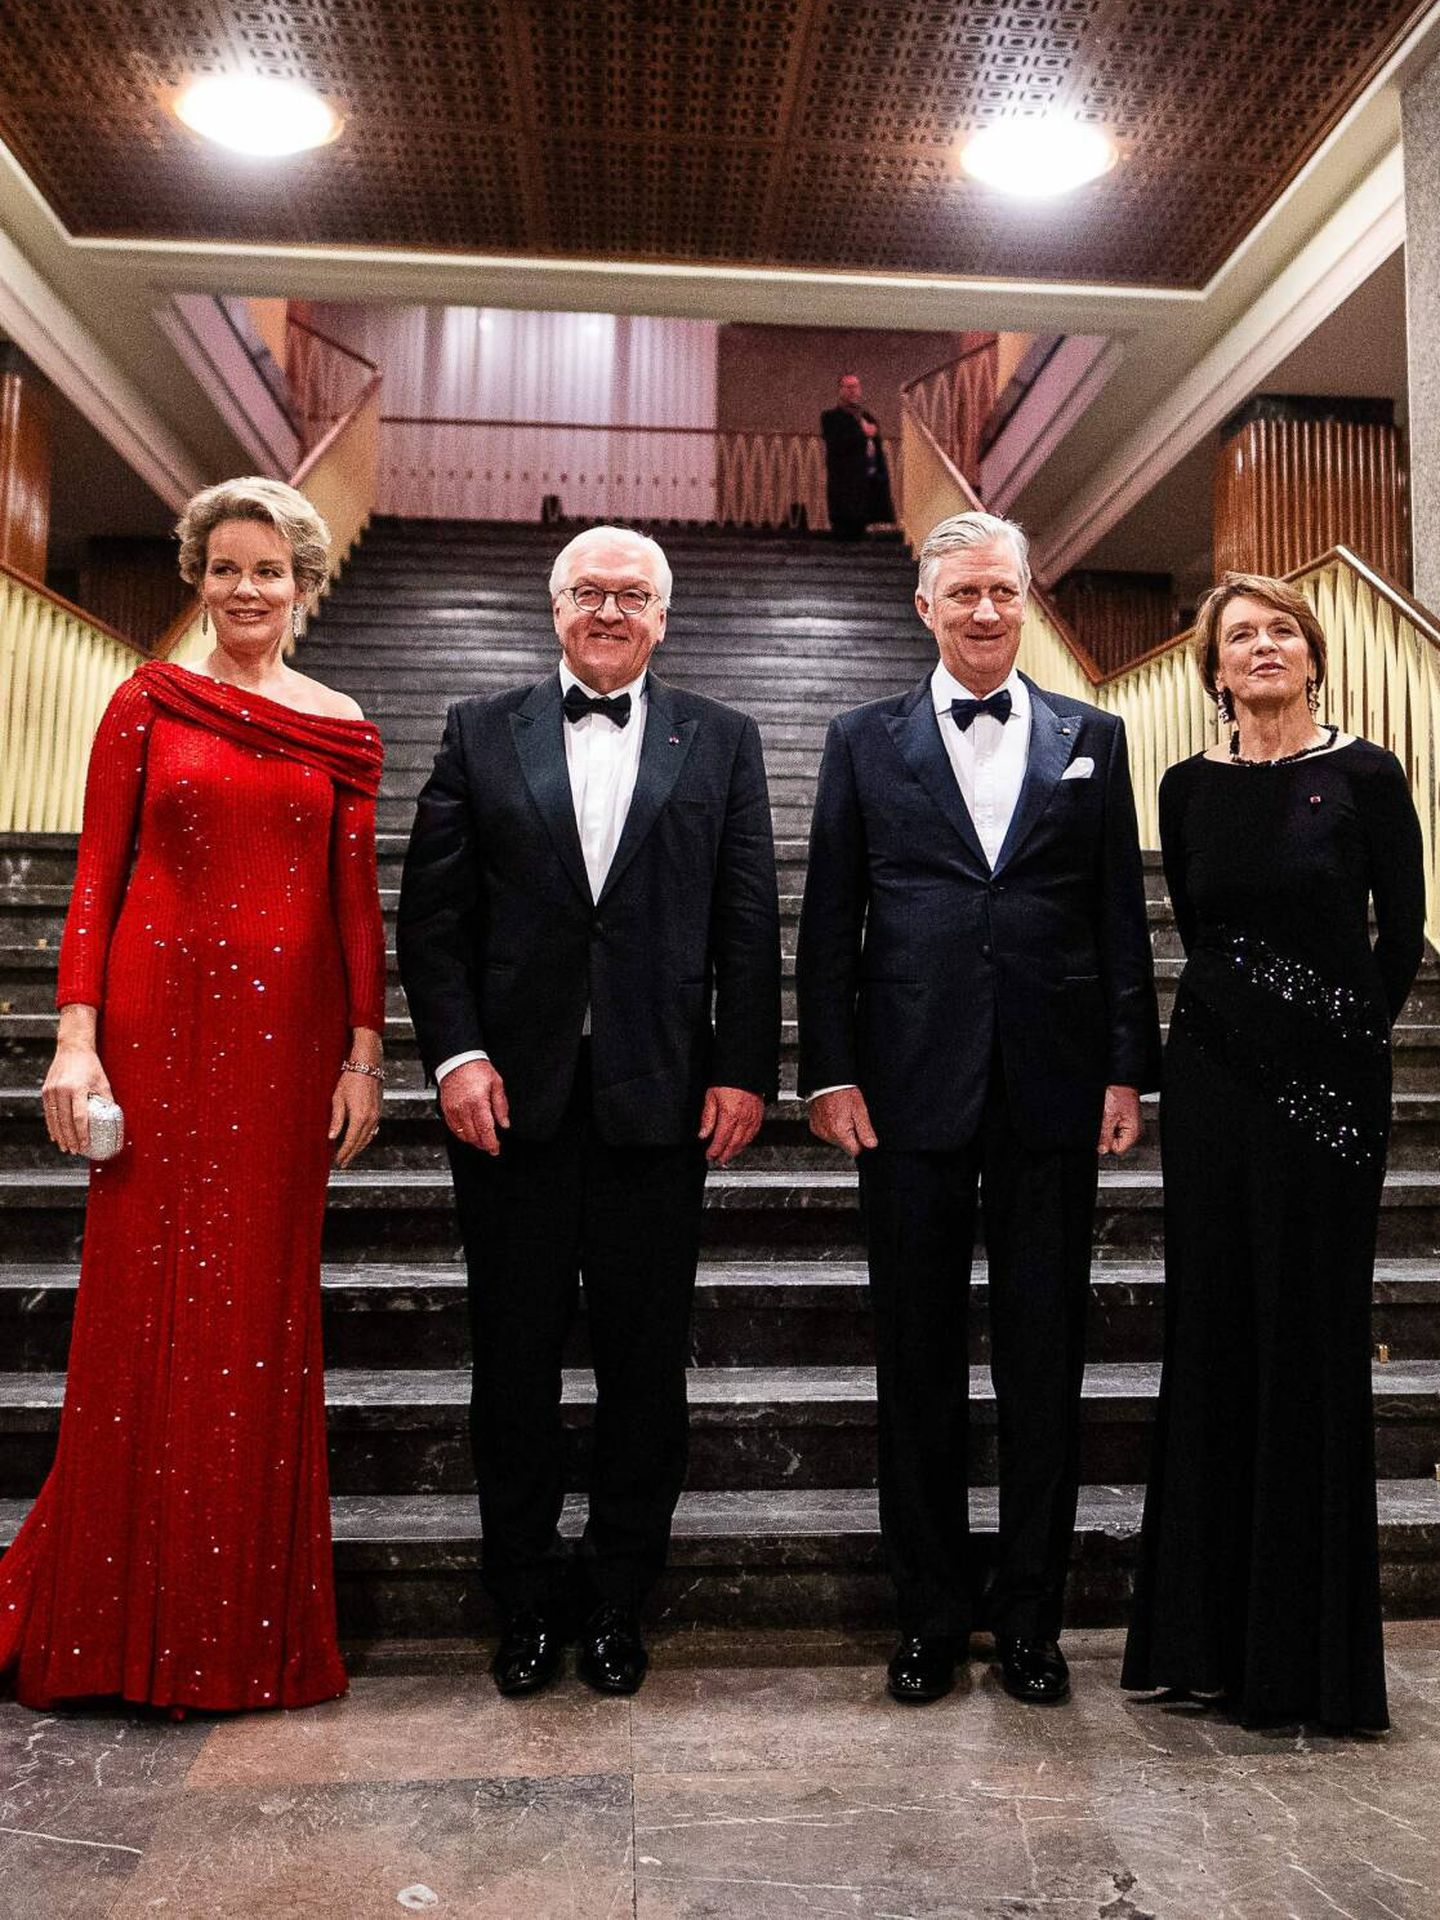  Los reyes belgas junto al presidente y la primera dama de Alemania. (CP)